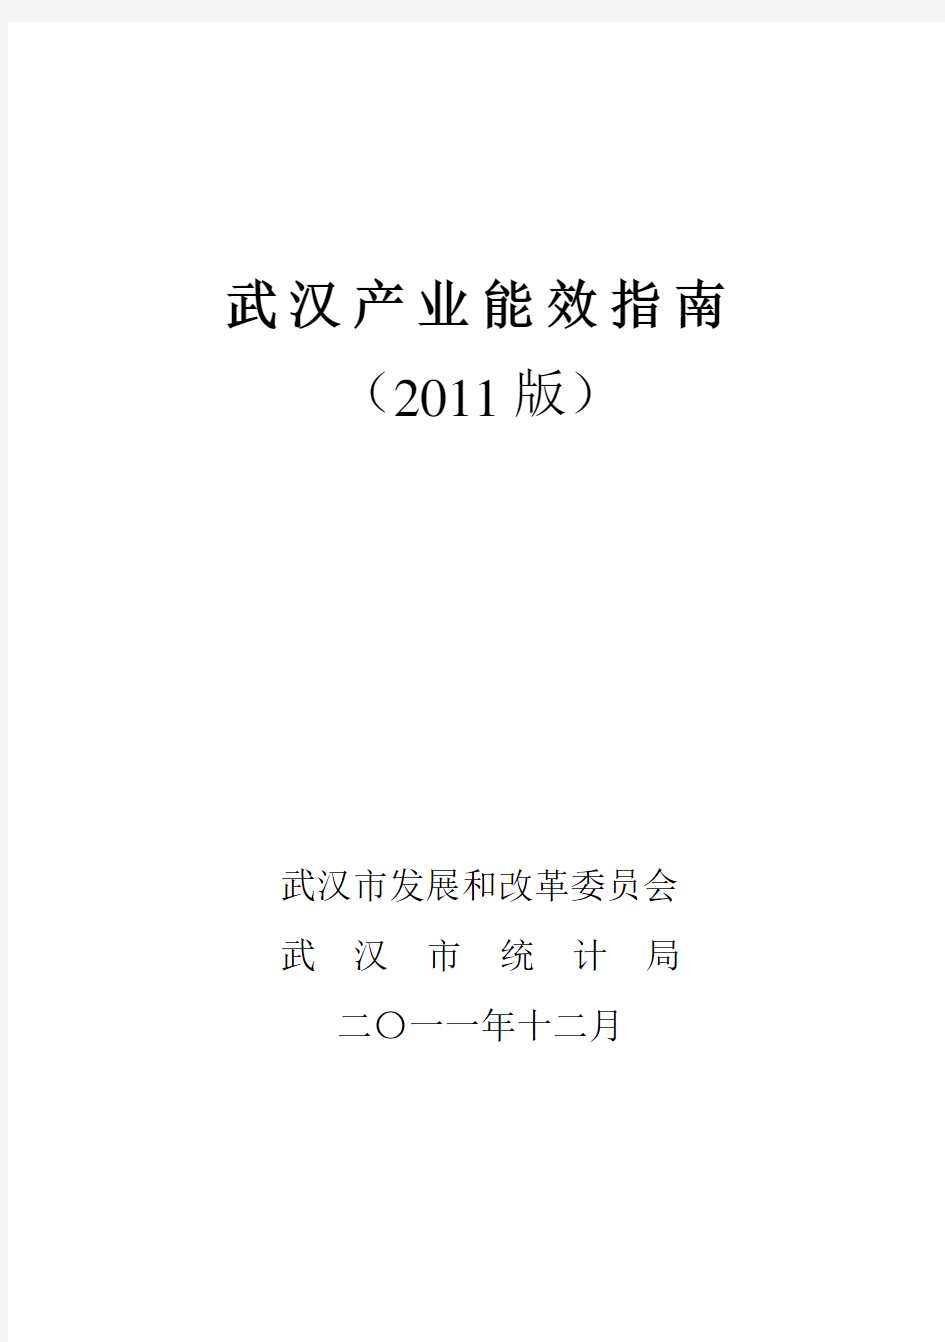 武汉市产业能效指南(2011版)2011.12.23